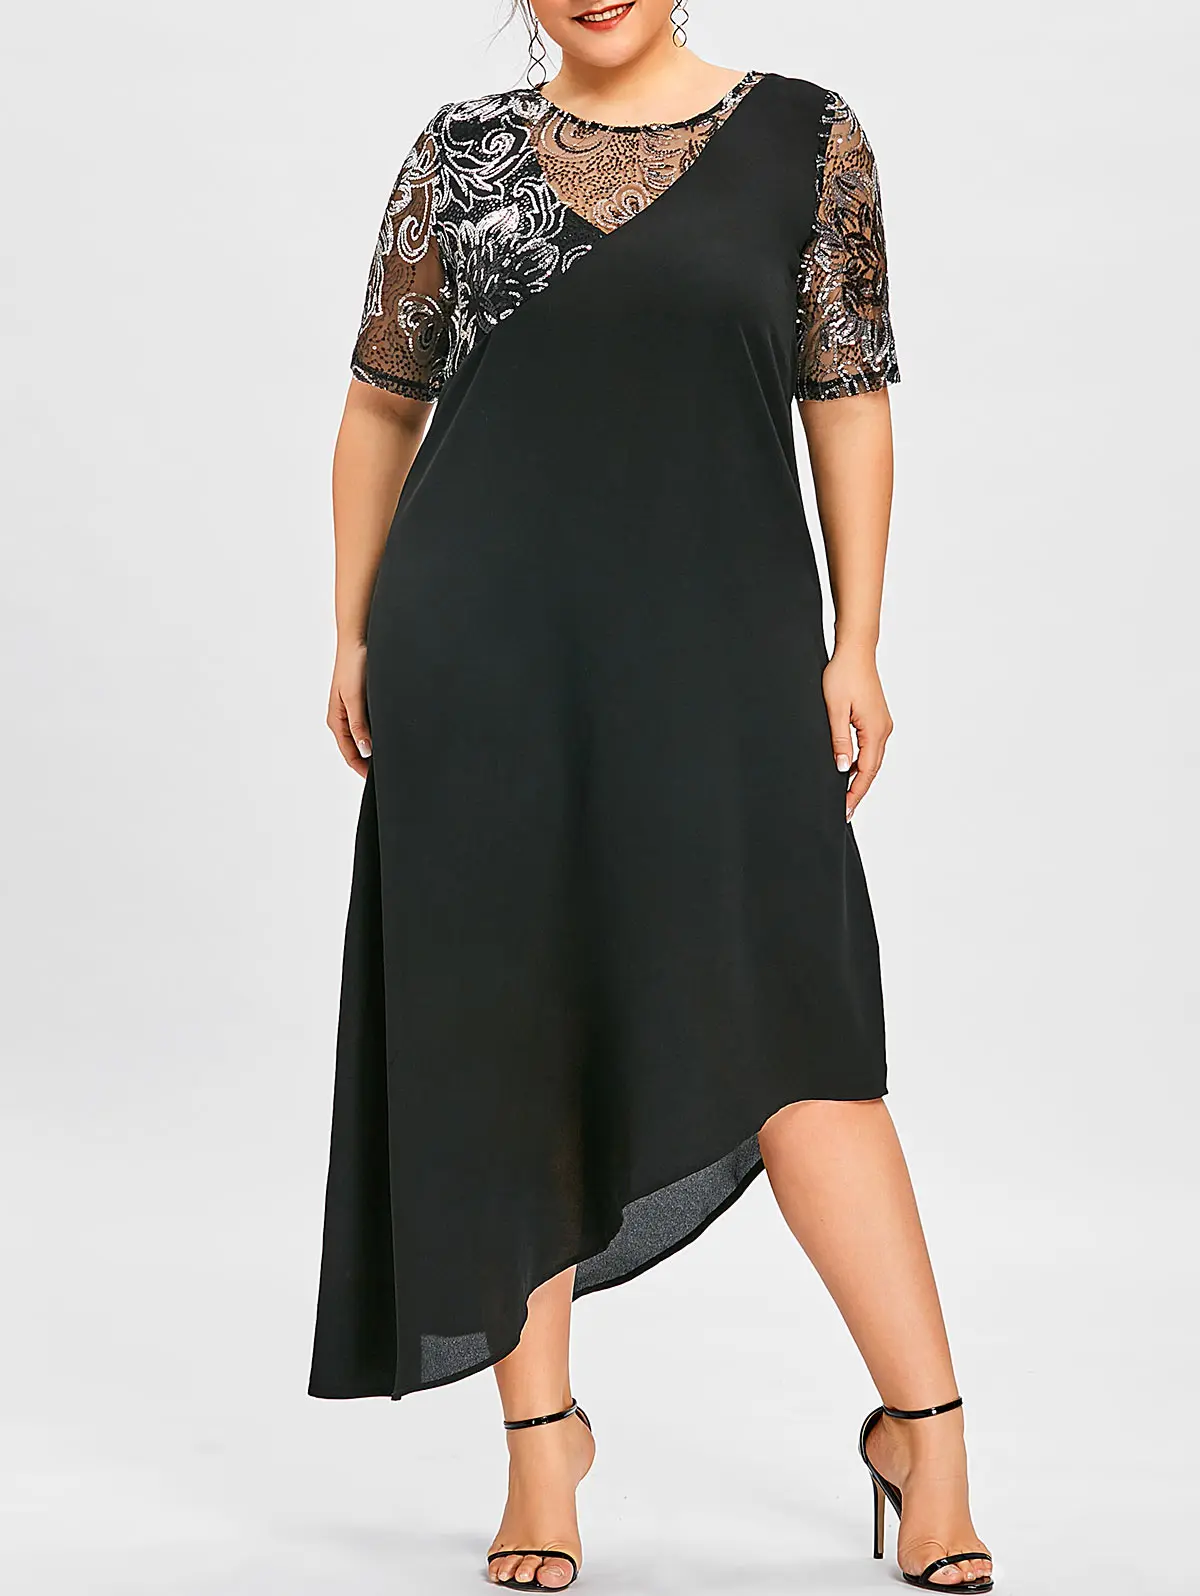 Wipalo Женское ассиметричное вечернее коктельное платье макси большого размера с паетками, элегантное летнее черное платье 5XL, платье с коротким рукавом